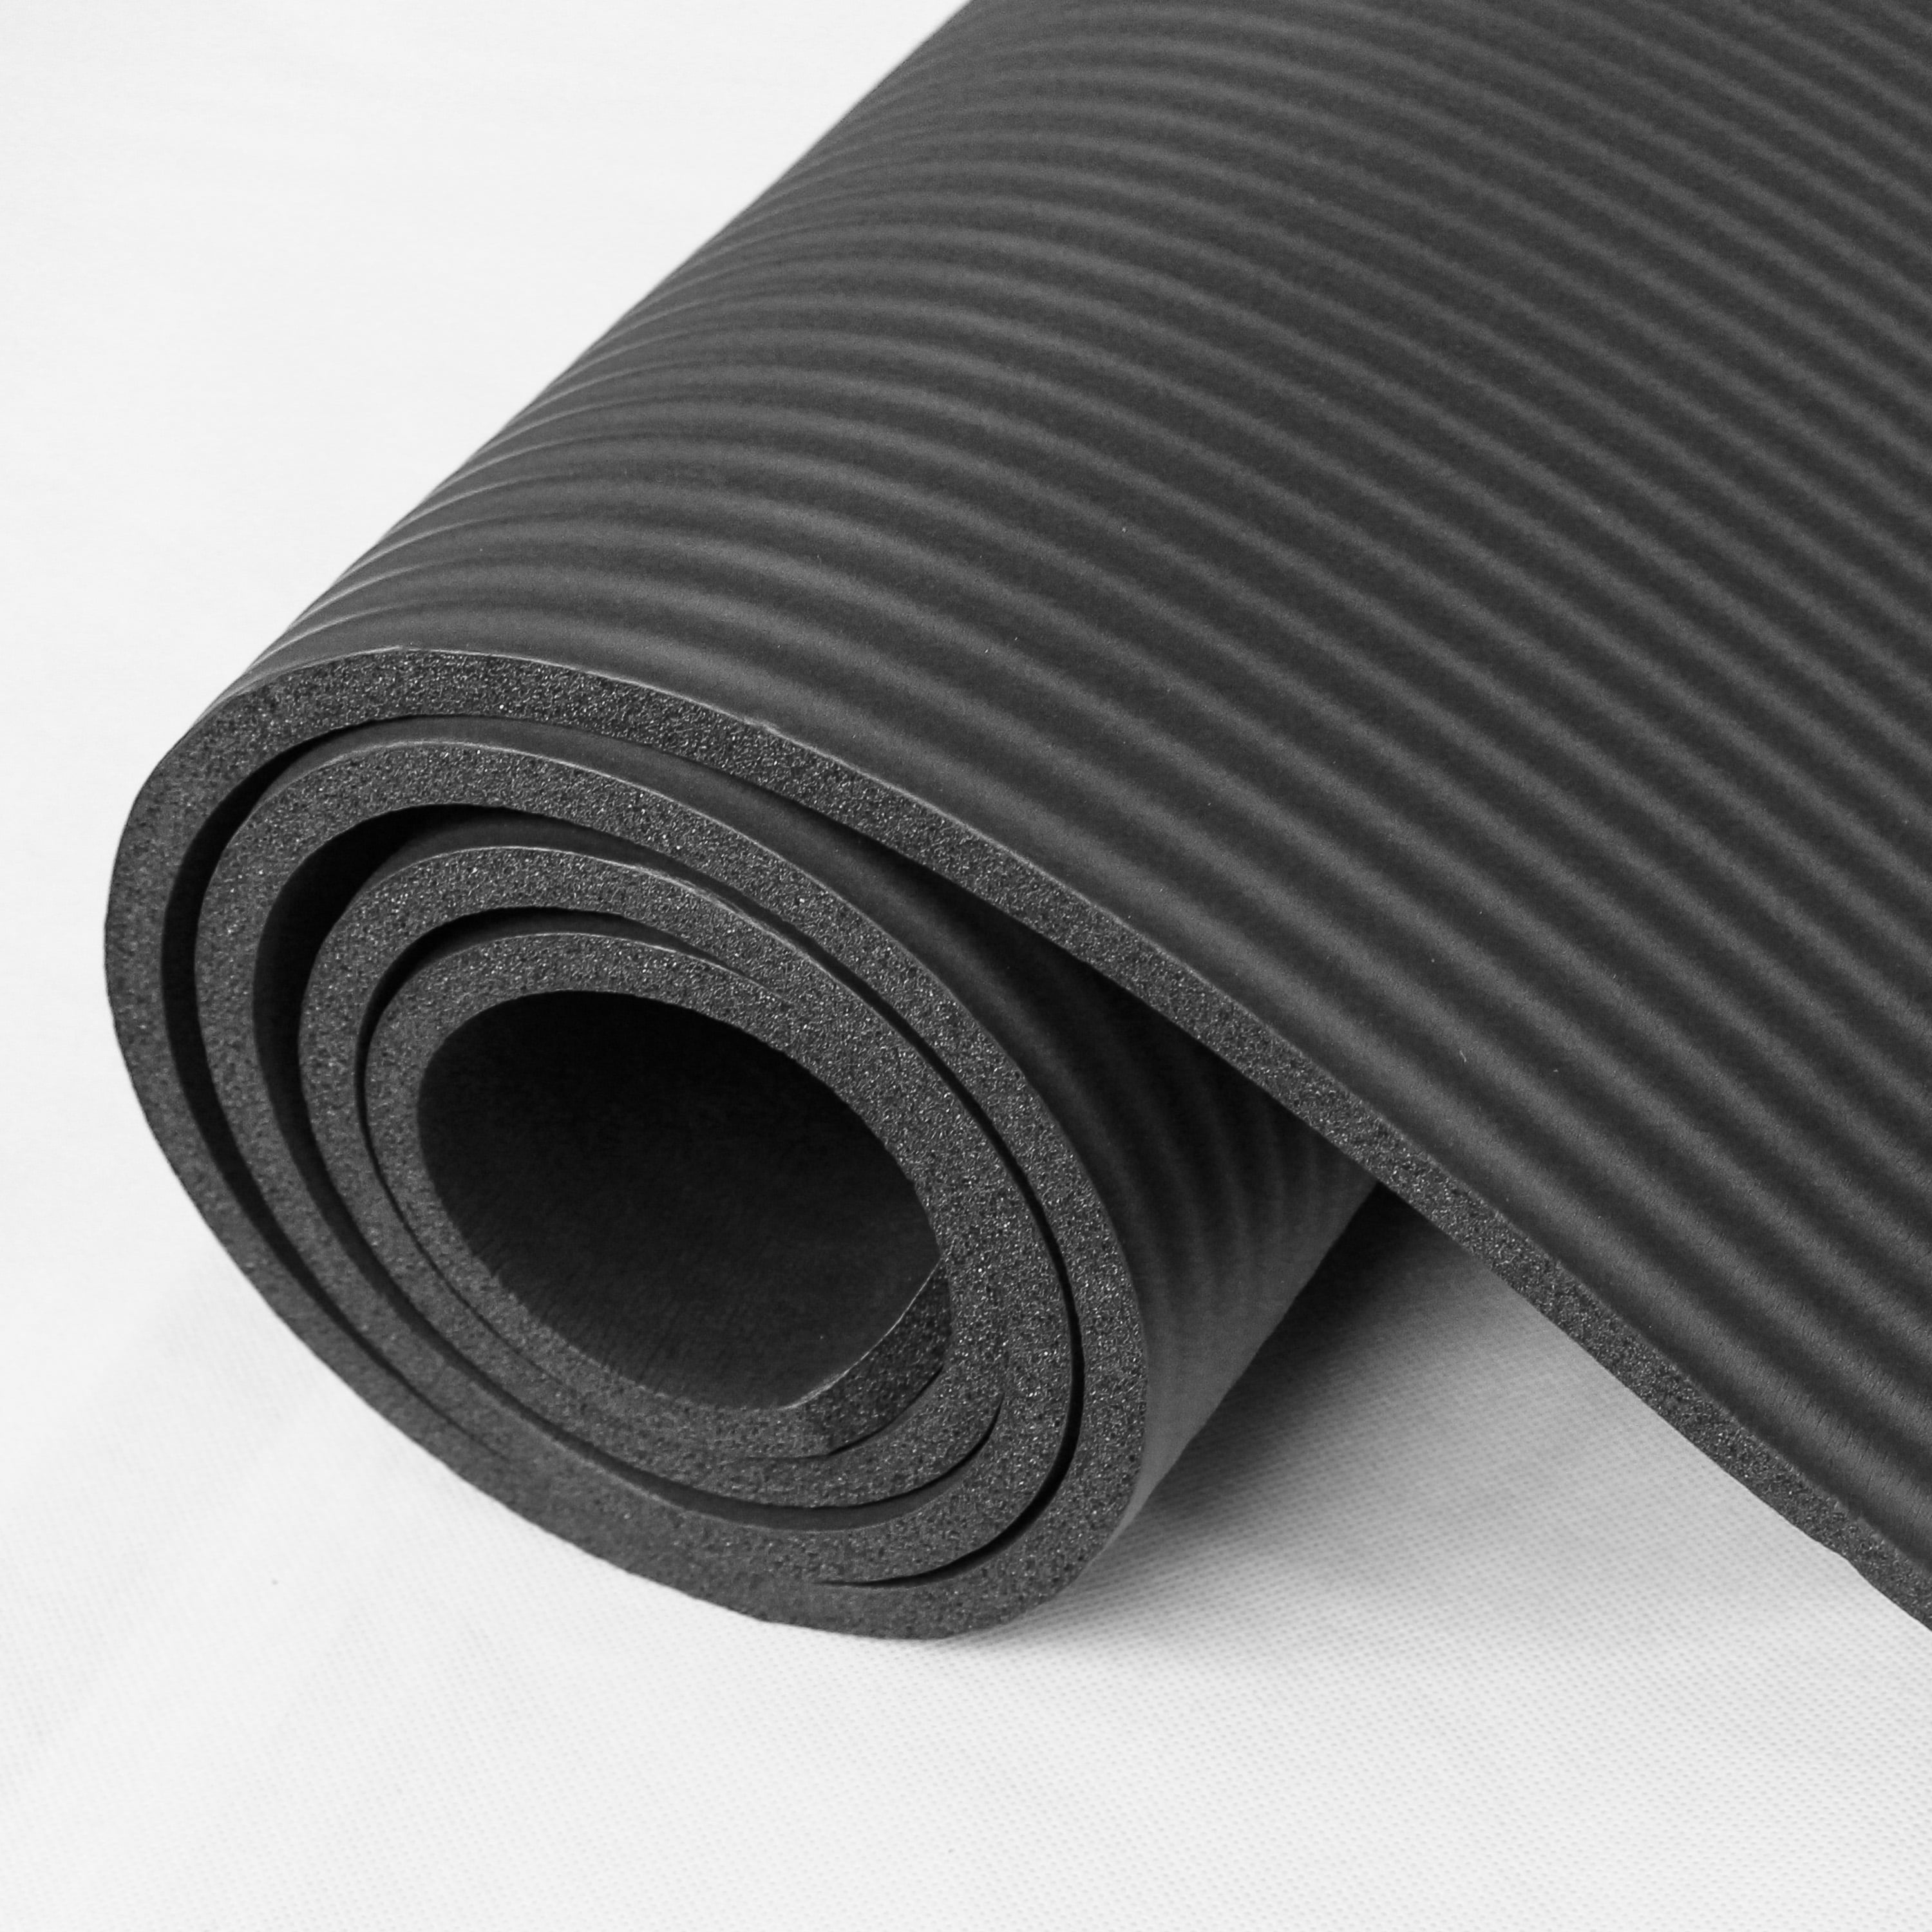 RYTMAT 1/2 Thick Exercise Mat Extra Wide 78x51 Large Yoga Mat Home Gym  Foam Workout Matt Blue 